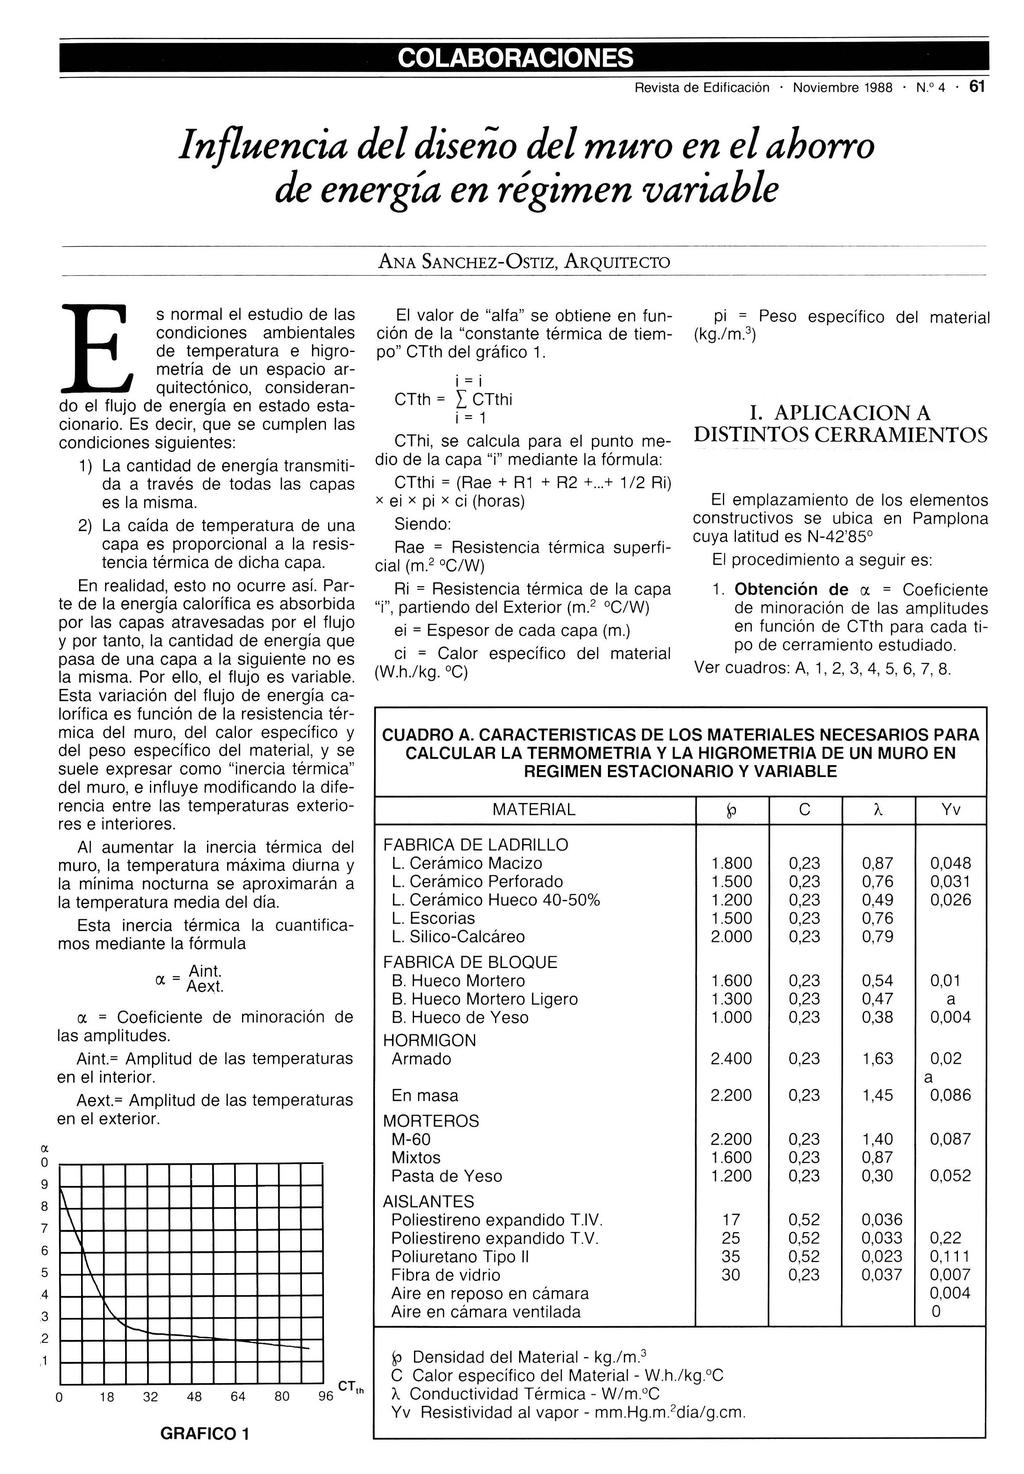 Revista de Edificación. Noviembre 1988. N.o 4. 61 Influencia del diseño del muro en el ahorro de energía en régimen variable CJ. o 9 8 7 6 5.4.3.2.